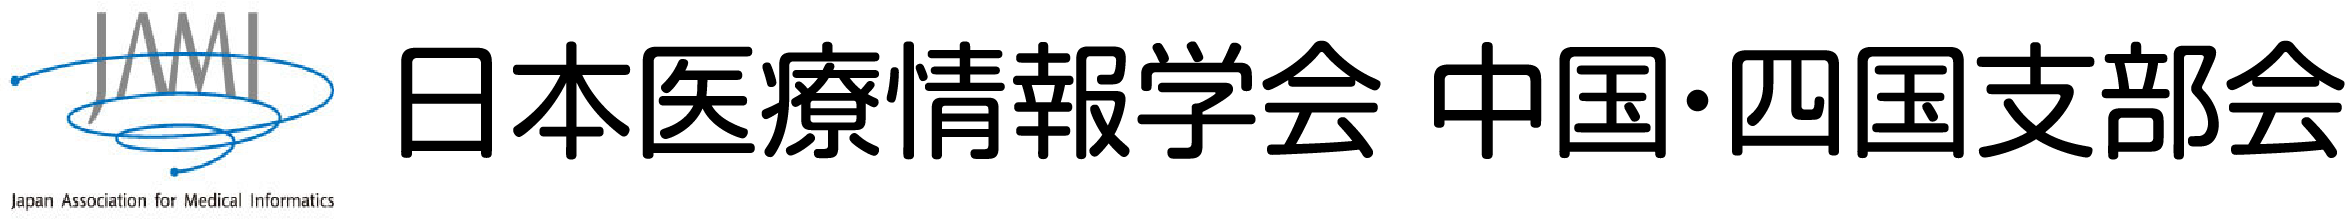 日本医療情報学会中国・四国支部会のロゴ